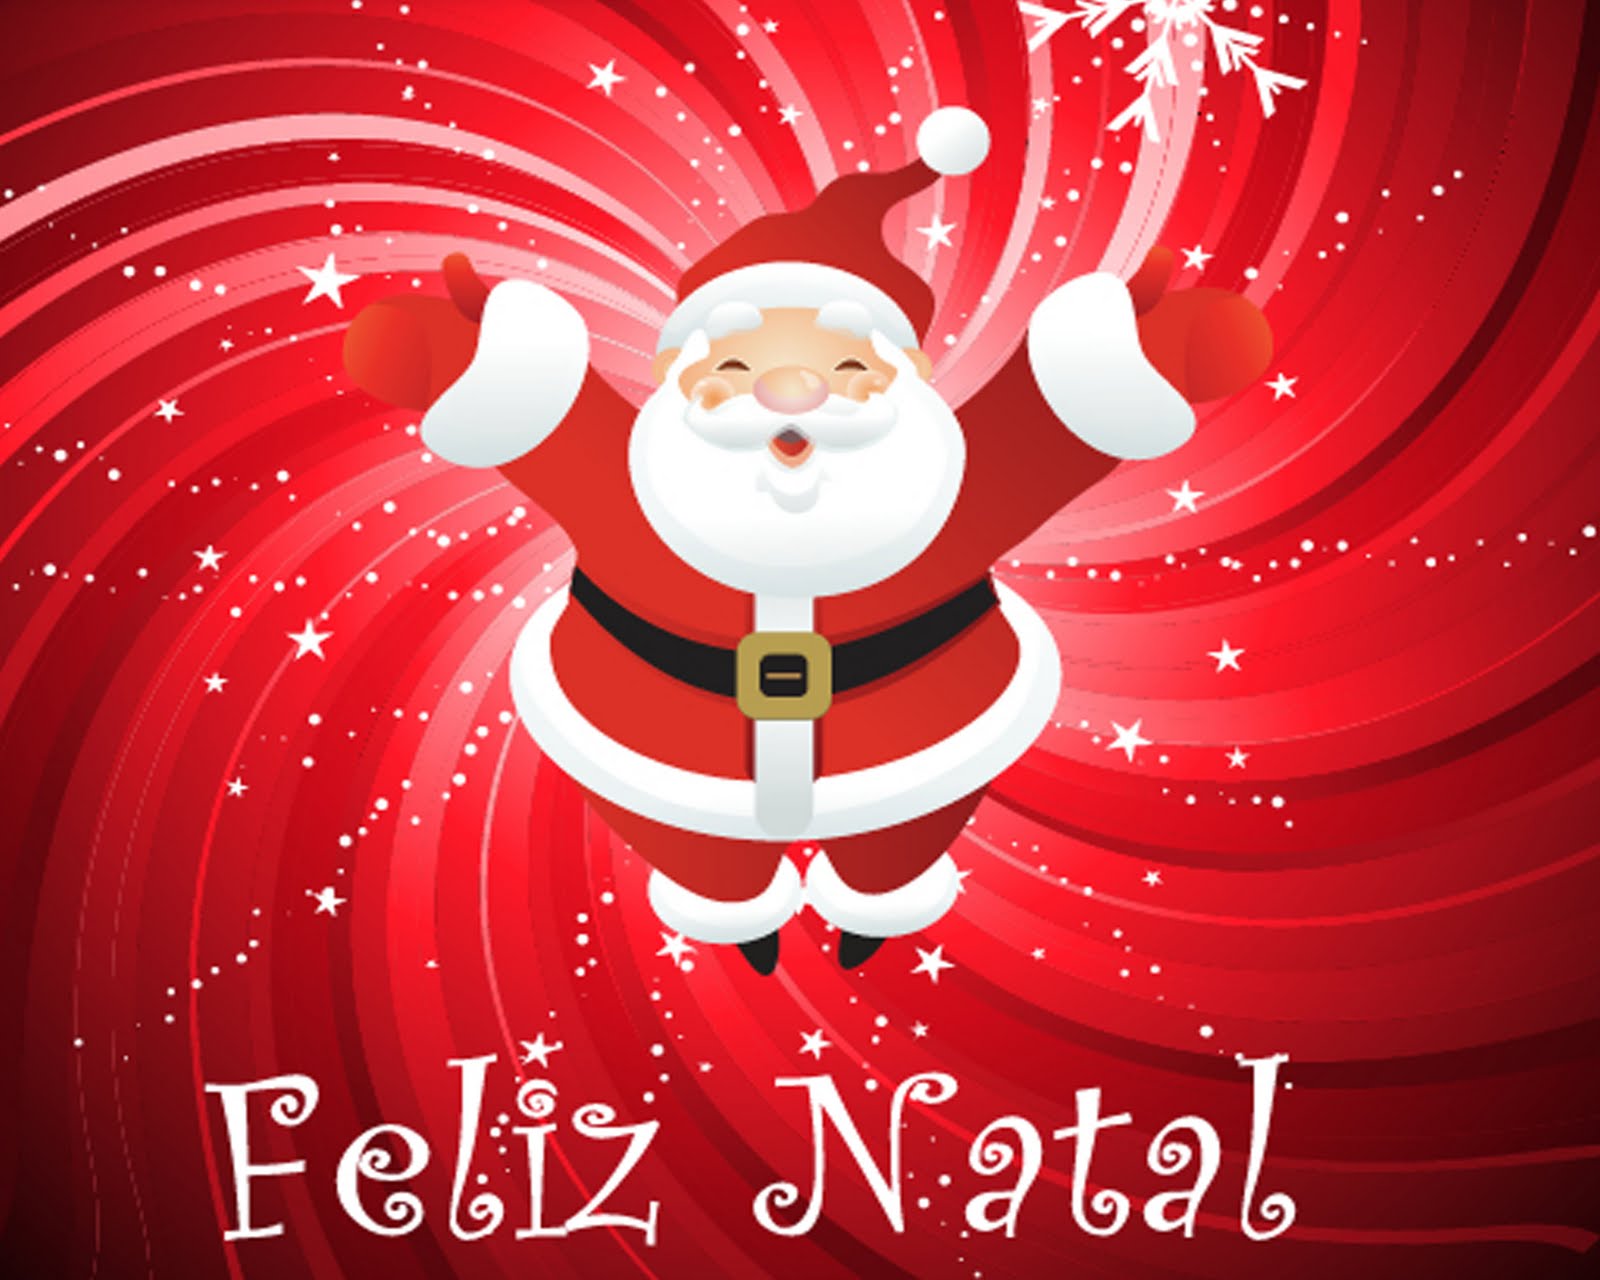 Imagens de feliz natal para você enviar aos seus entes queridos e compartilhar o espírito natalino